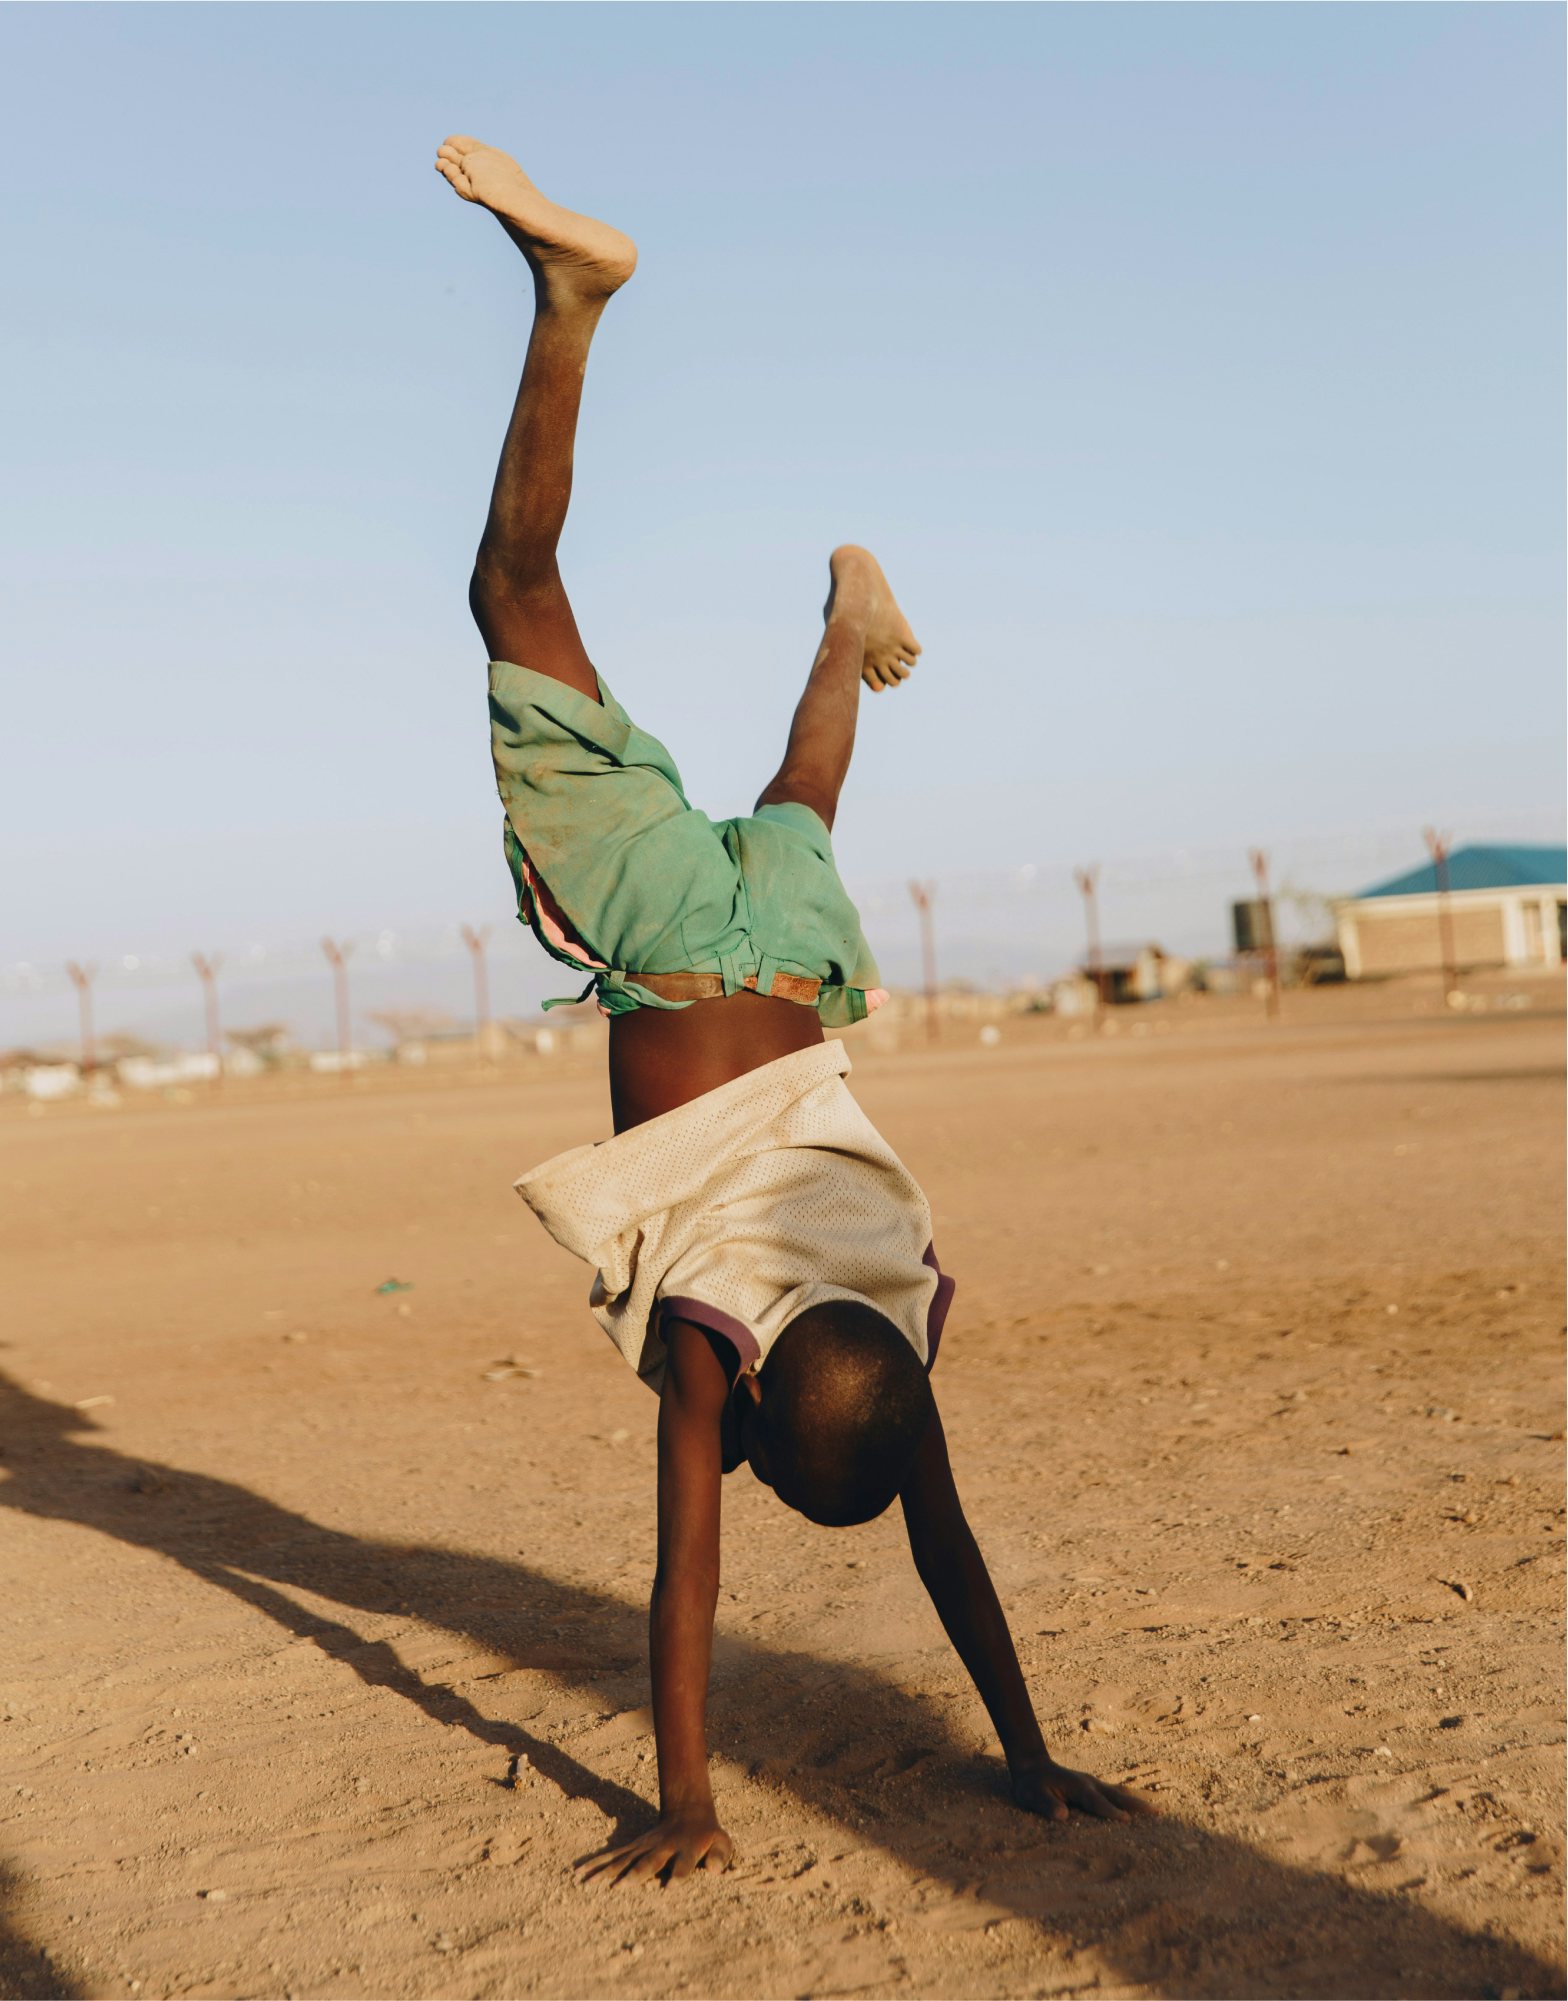 Boy cartwheeling in Kalobbeyei, Kenya